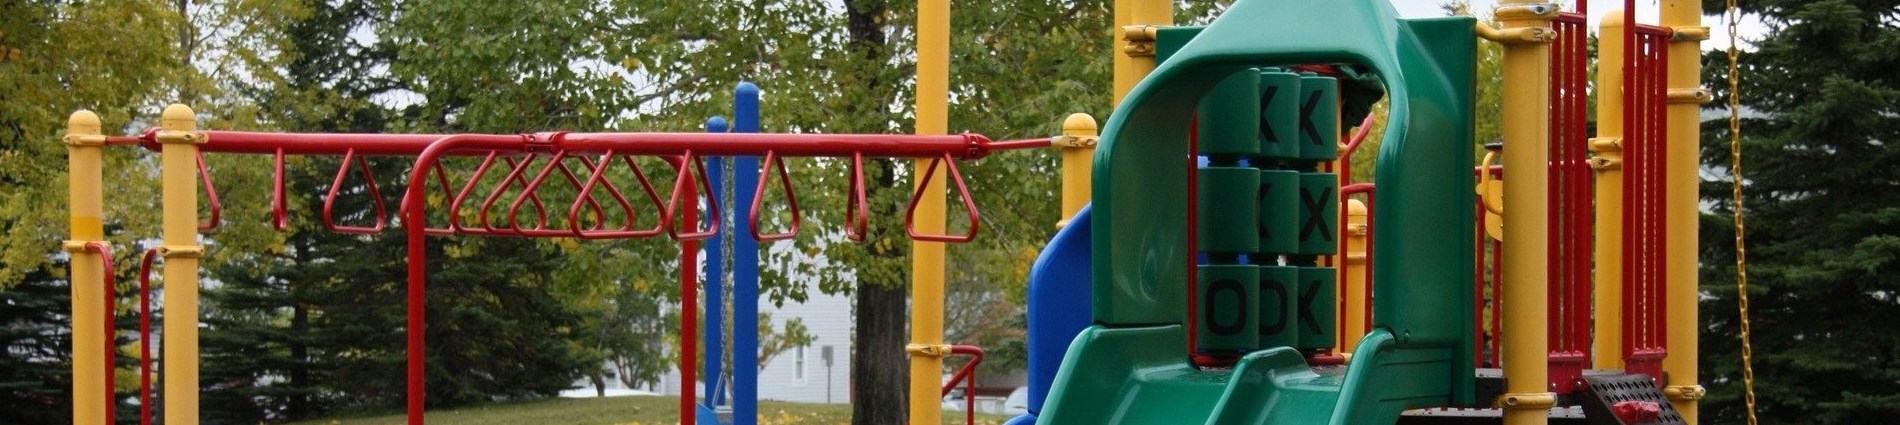 Photo of City playground equipment